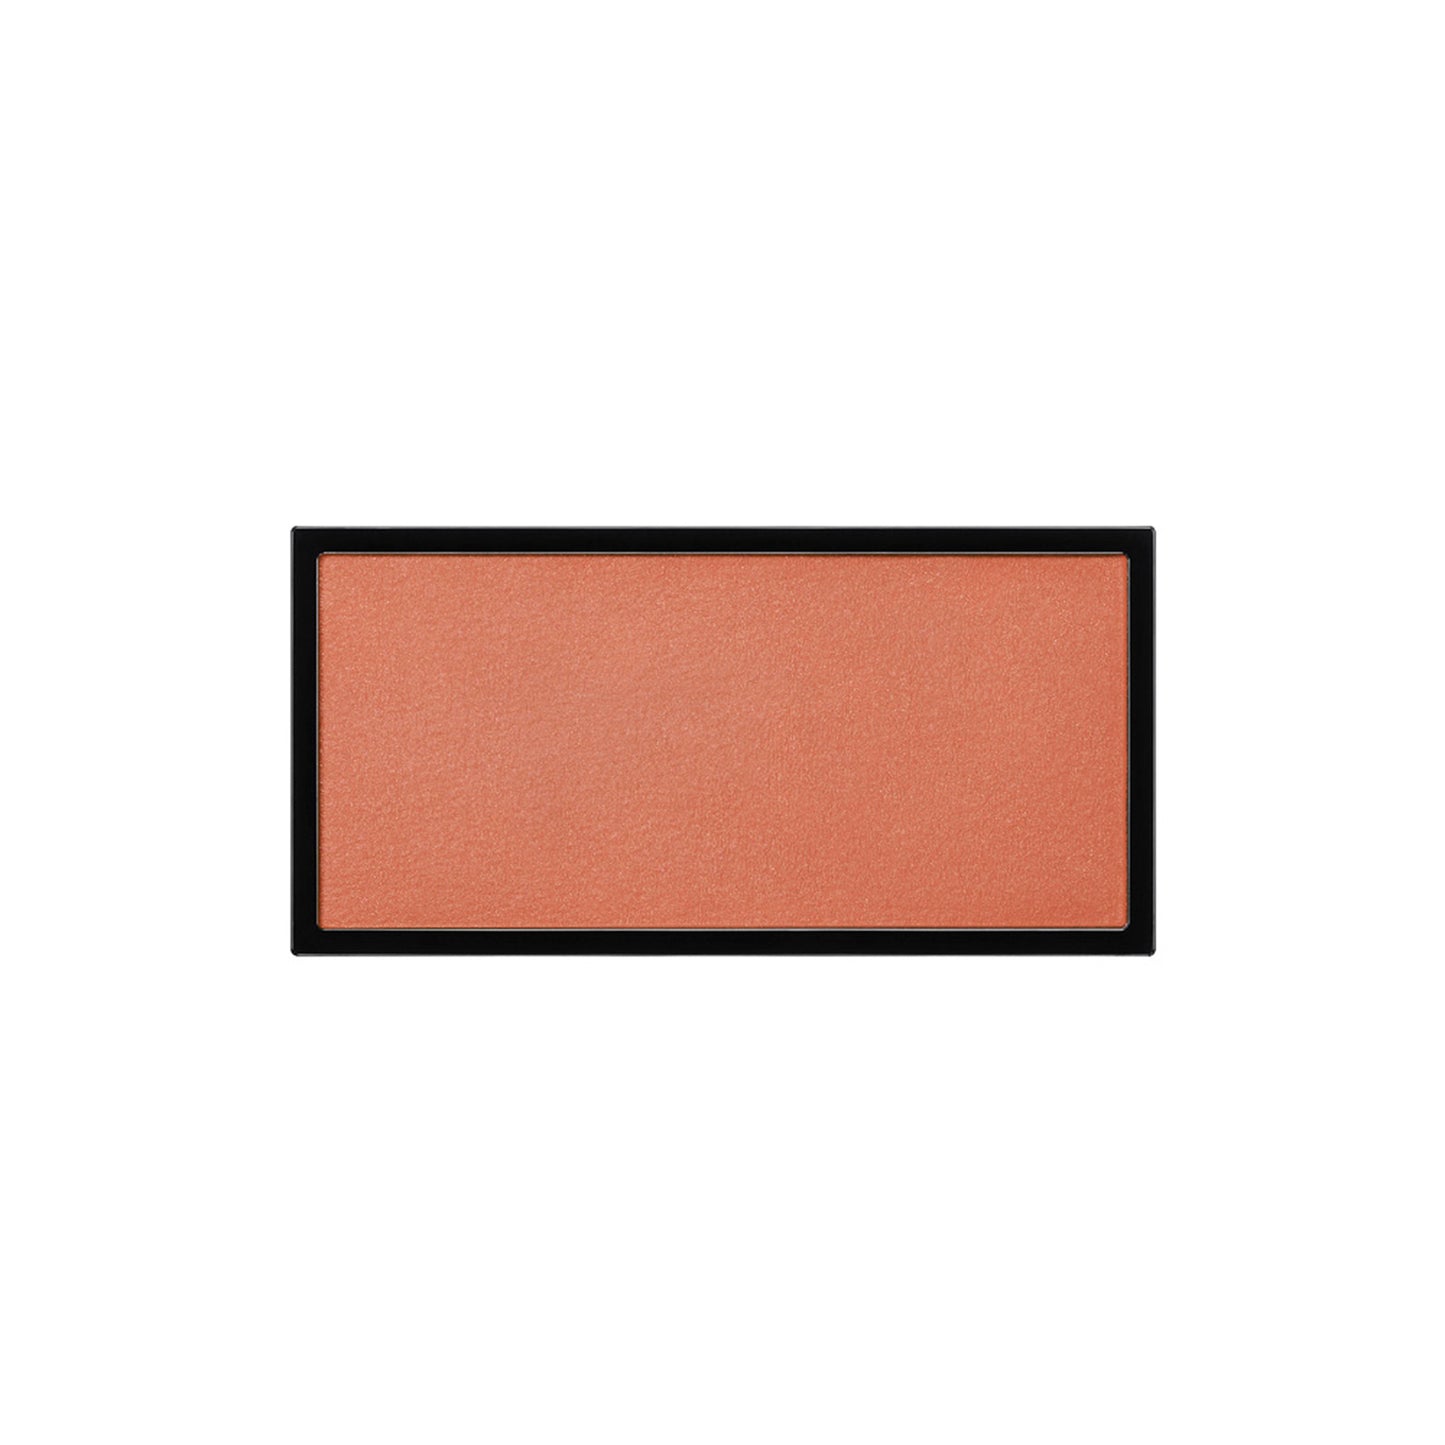 A rectangle shaped powder blush pan in a vibrant saffron